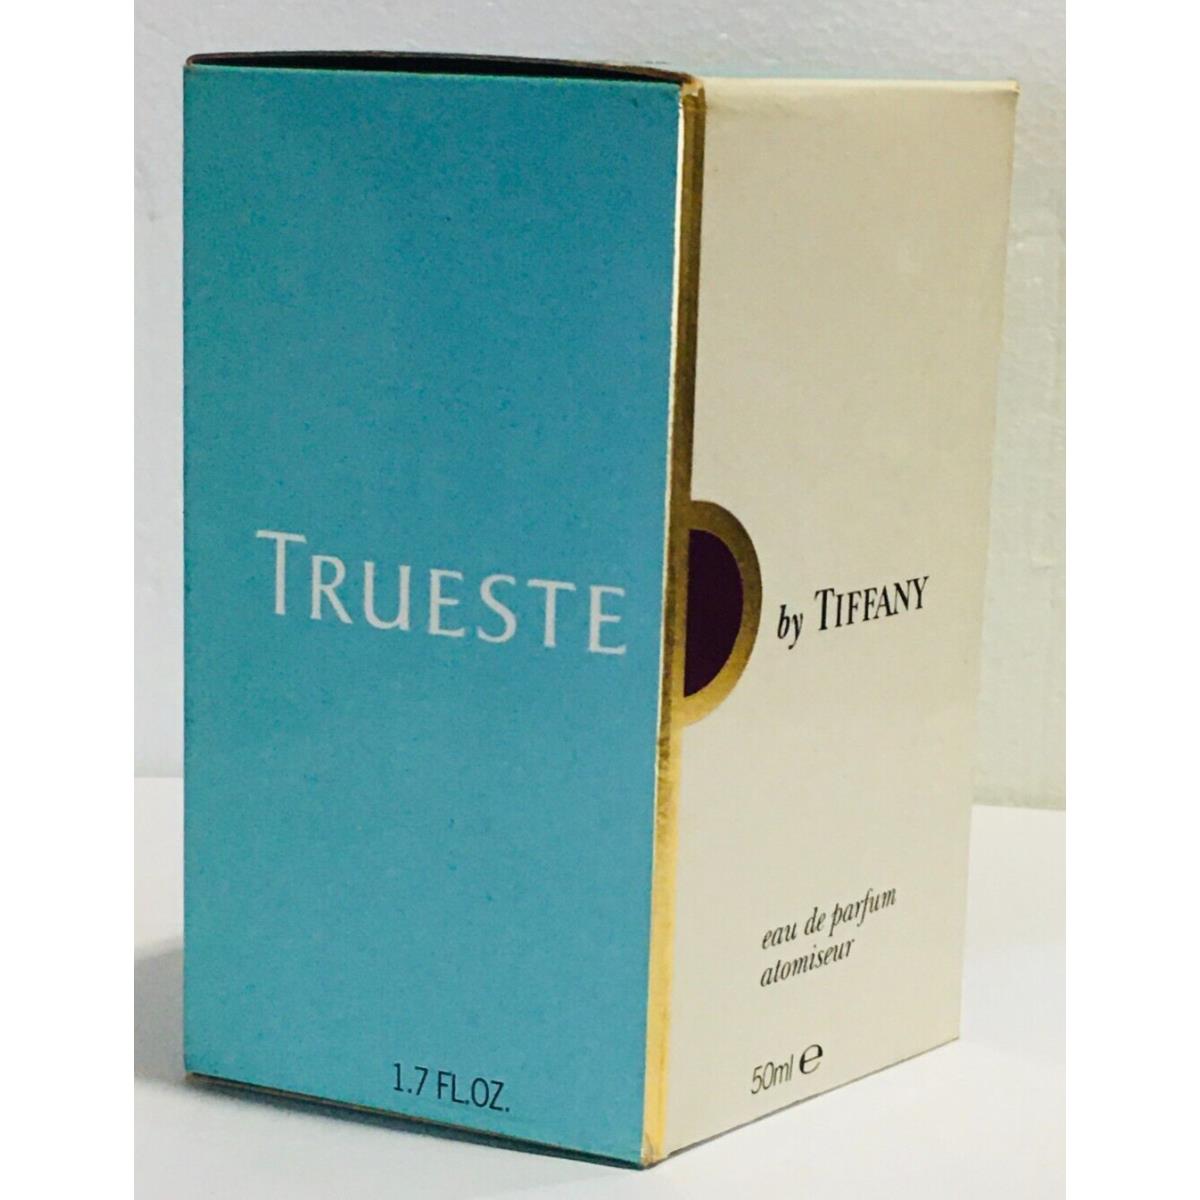 Trueste Tiffany For Women Eau de Toilette Atomiseur 50ml in Unsealed Box